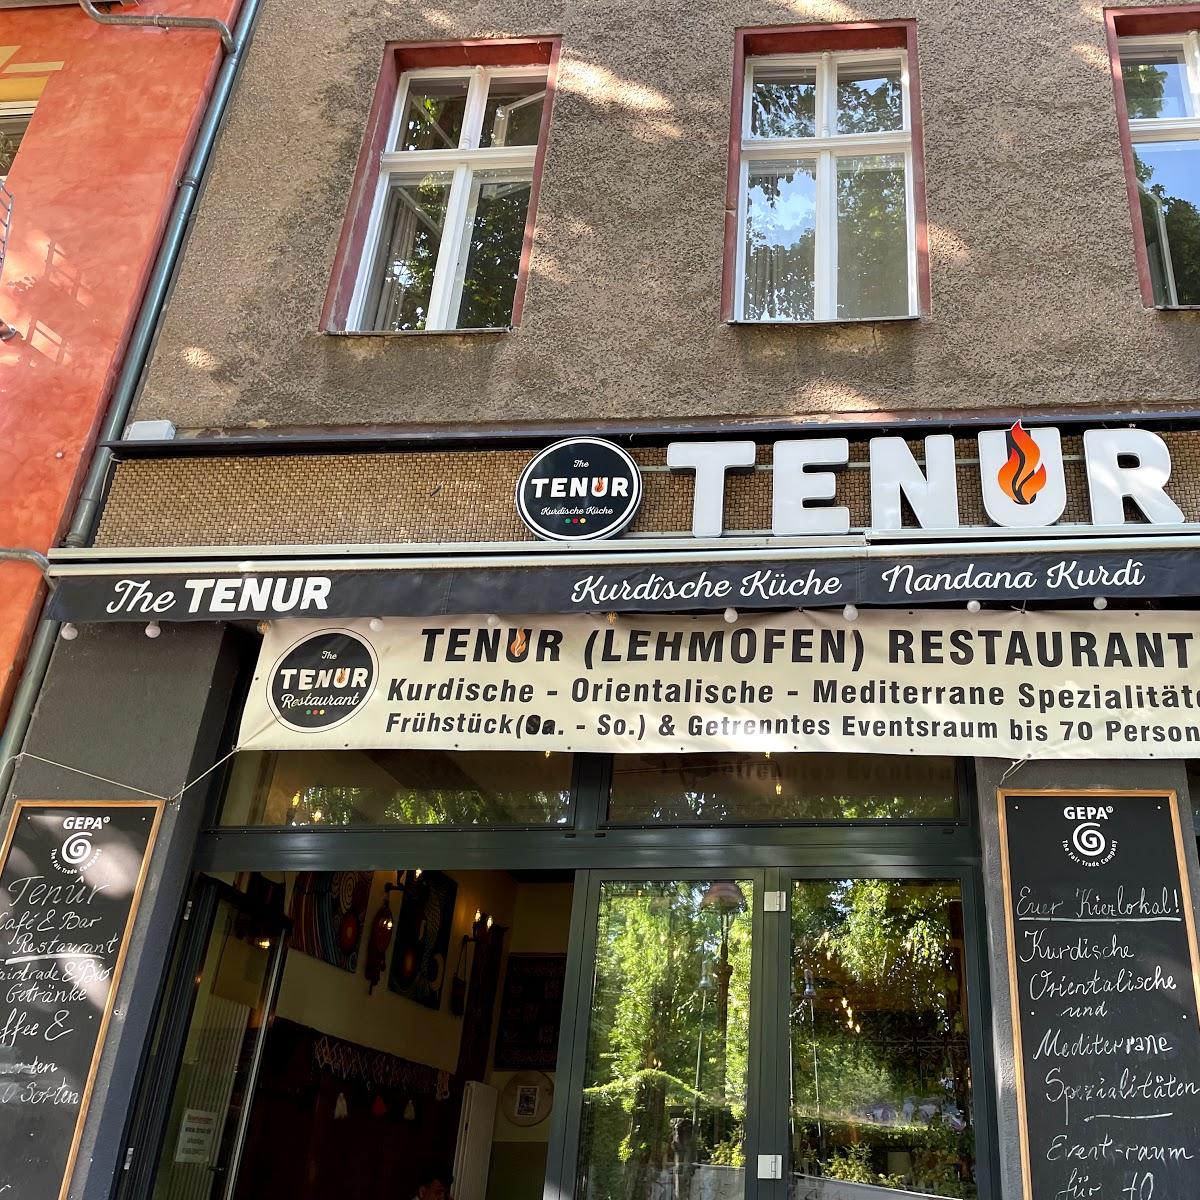 Restaurant "Tenur - Kurdische Küche, Café, Bar" in Berlin